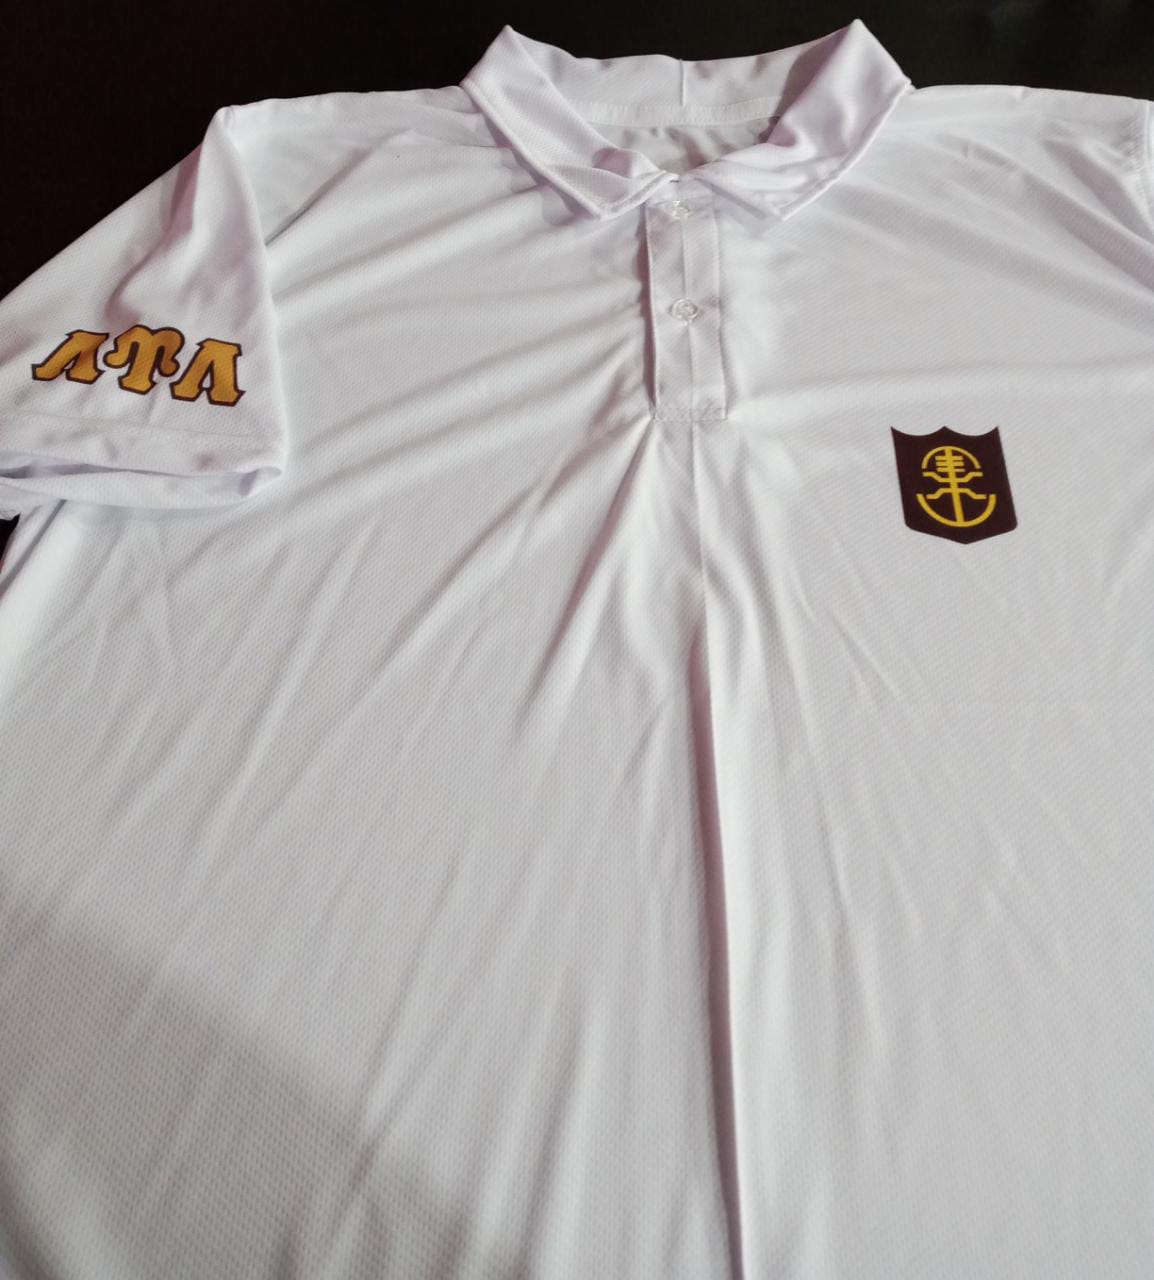 White LUL Golf Shirt - Sublimated Logos